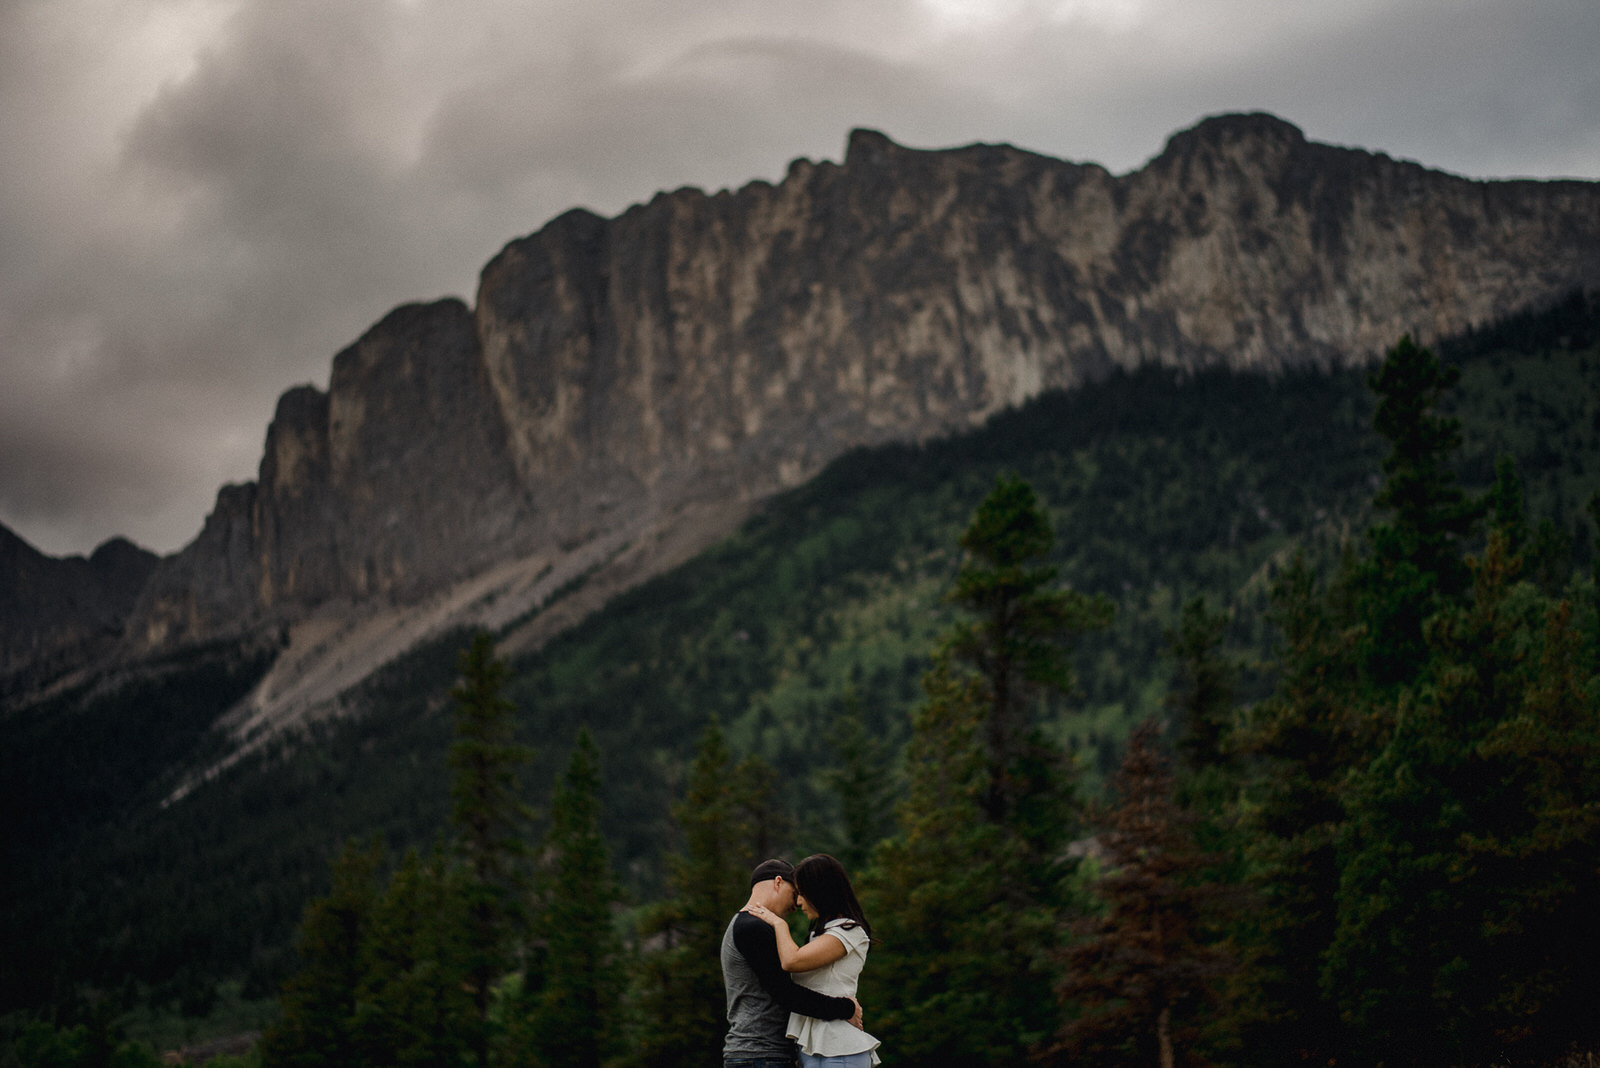 The Leddas Wedding Photography - Courtney & Josh: Kananaskis Engagement